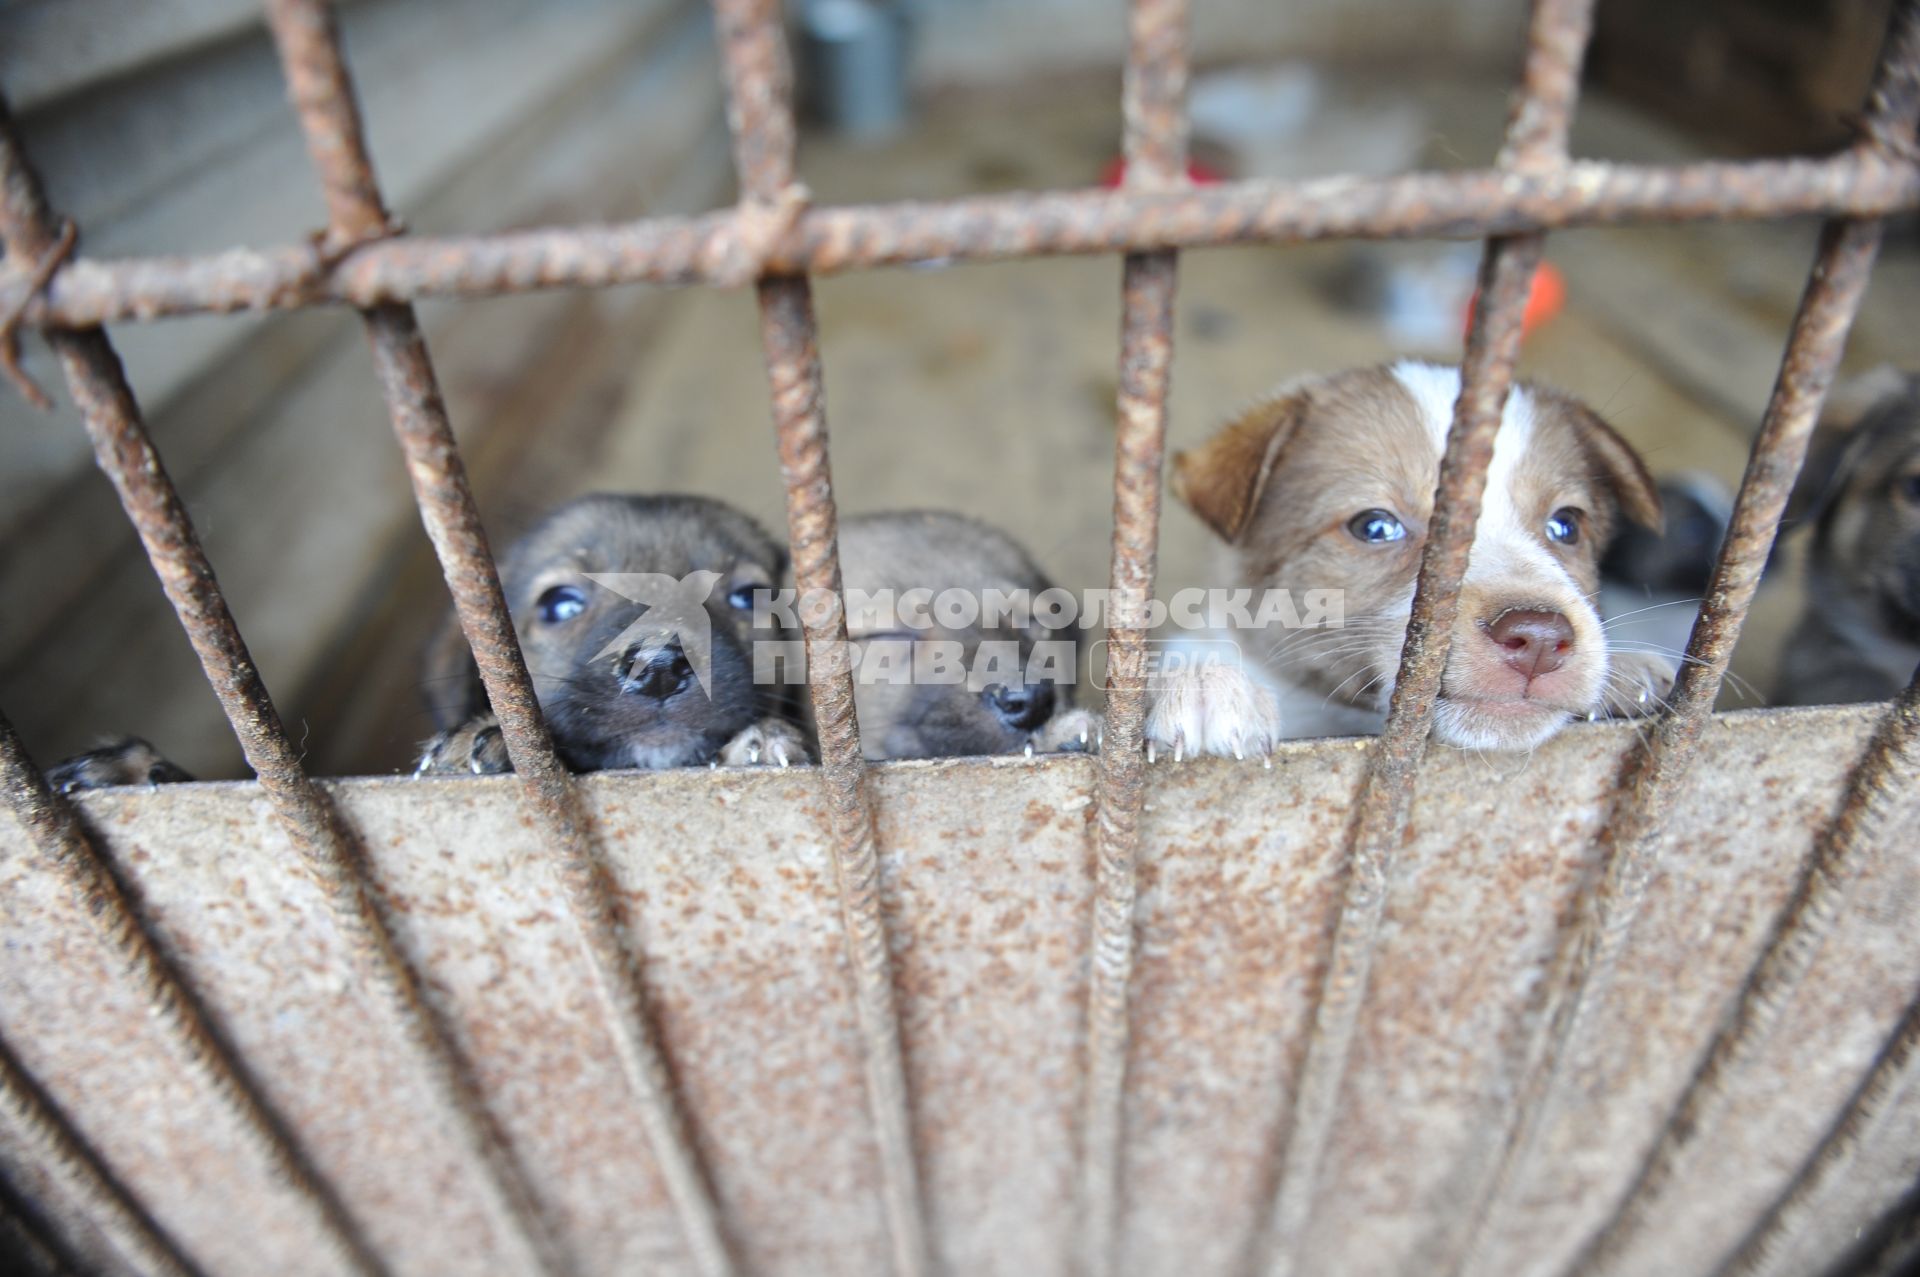 Питомник для бездомных собак и кошек в городе Пушкино. На снимке: бездомные щенки в вольере.